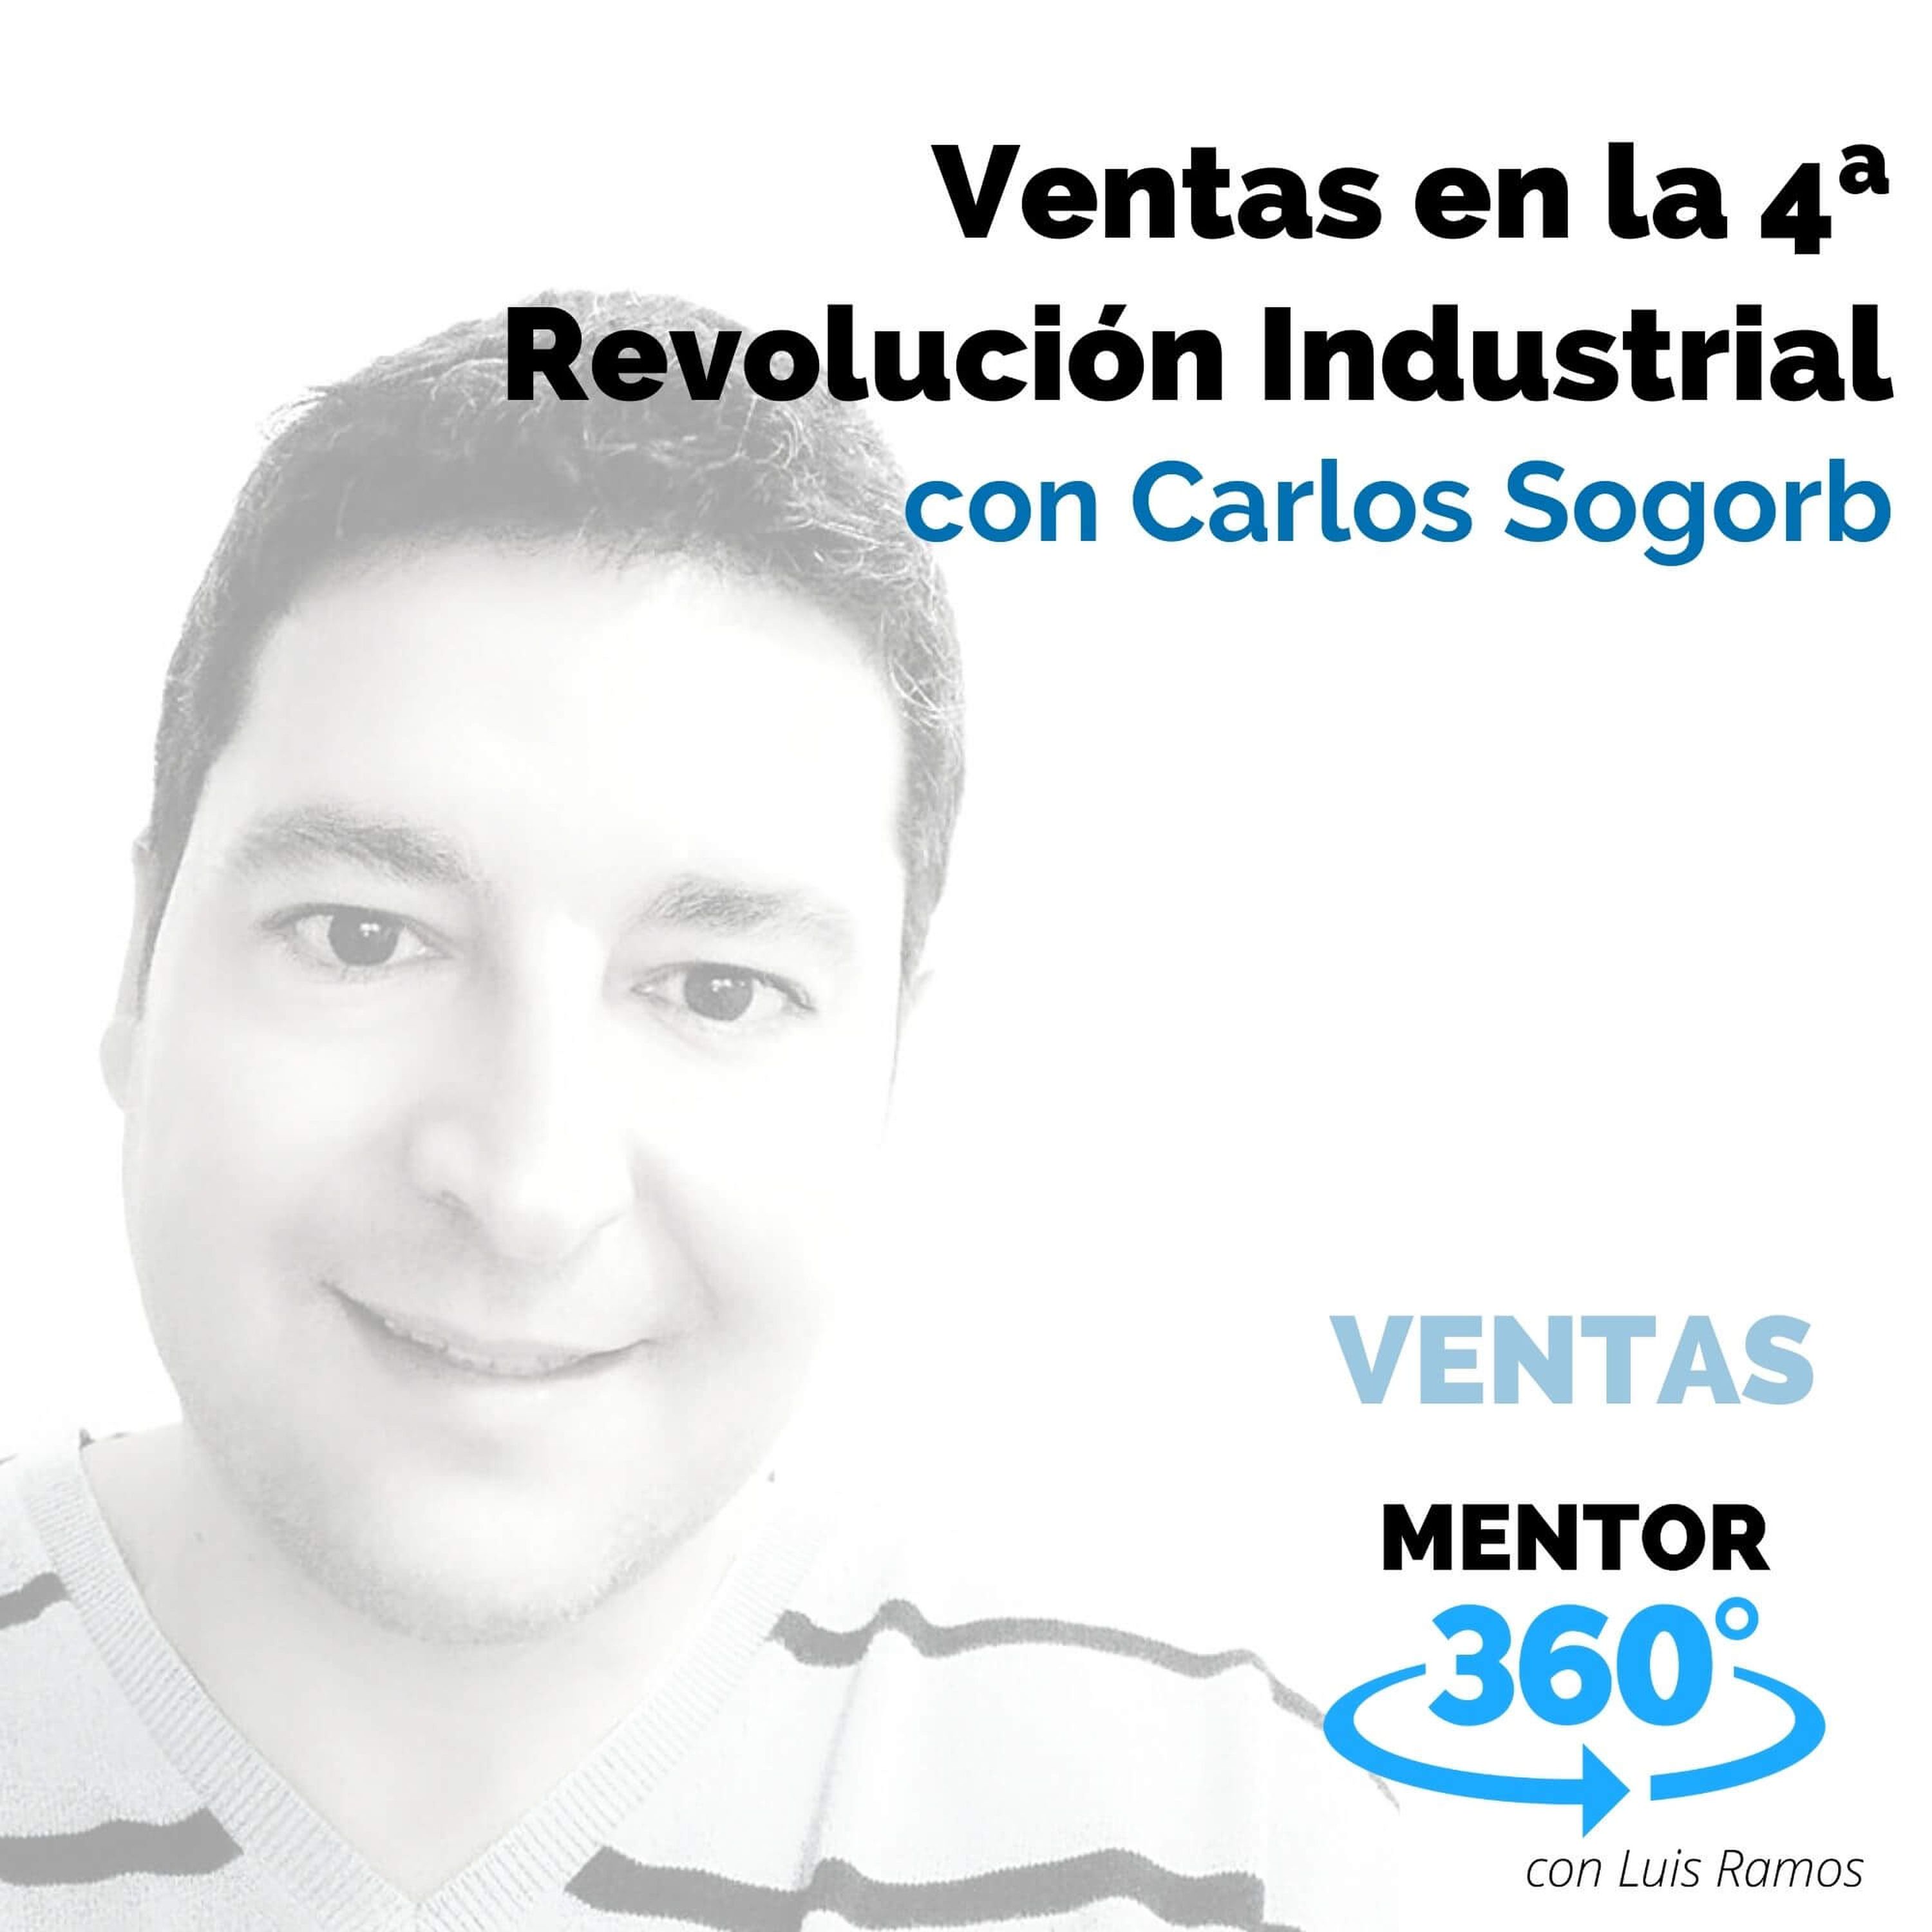 Ventas en la 4ª Revolución Industrial, con Carlos Sogorb - MENTOR360